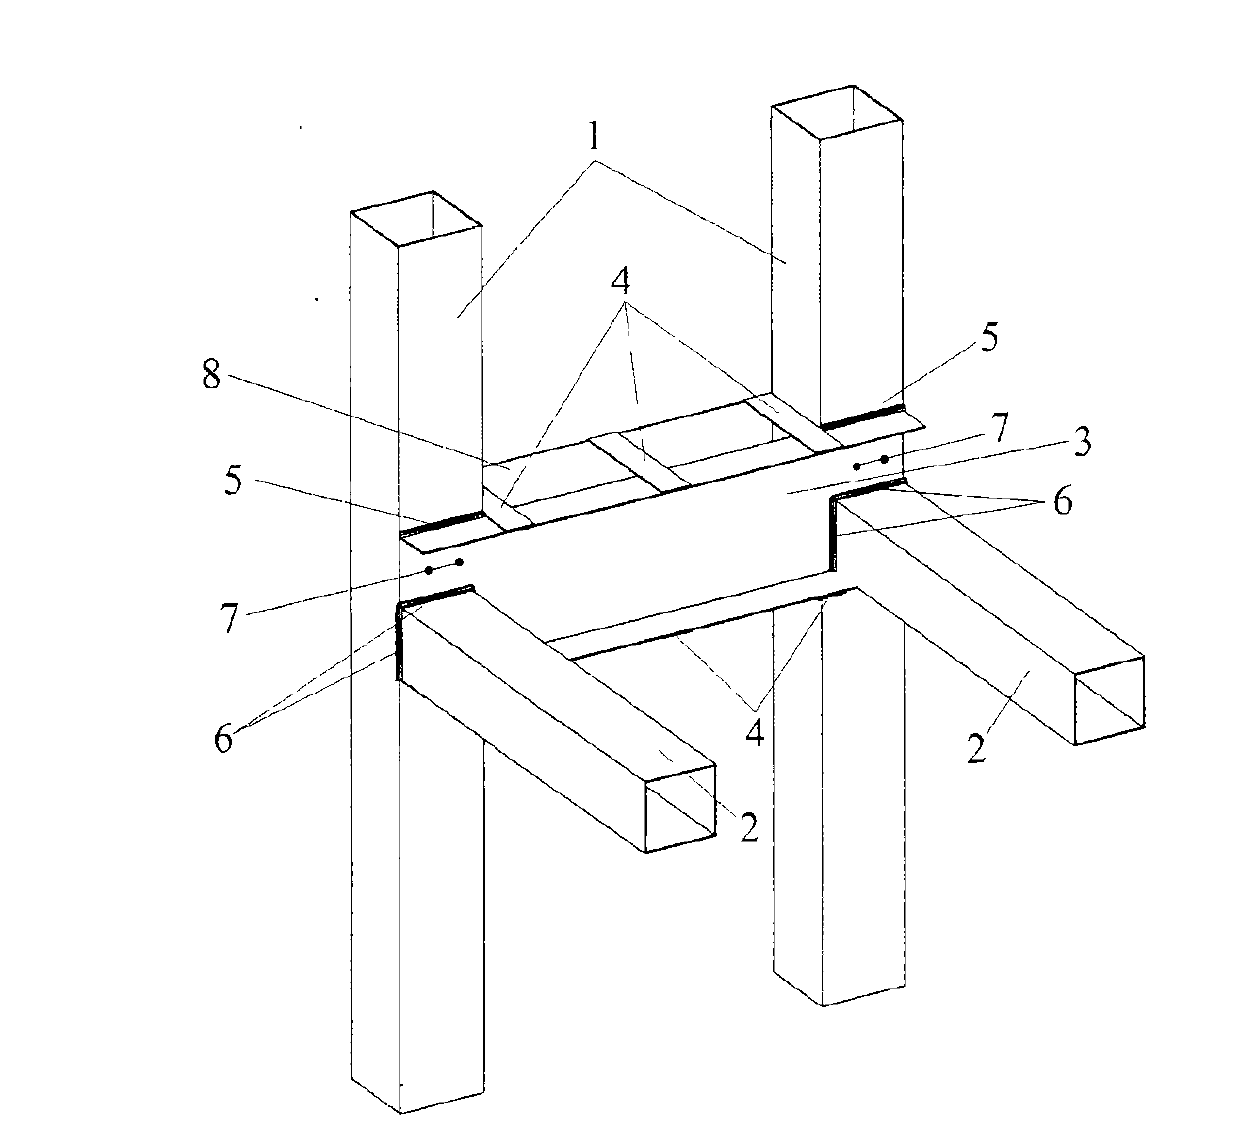 Cold bending thin-wall steel beam column node